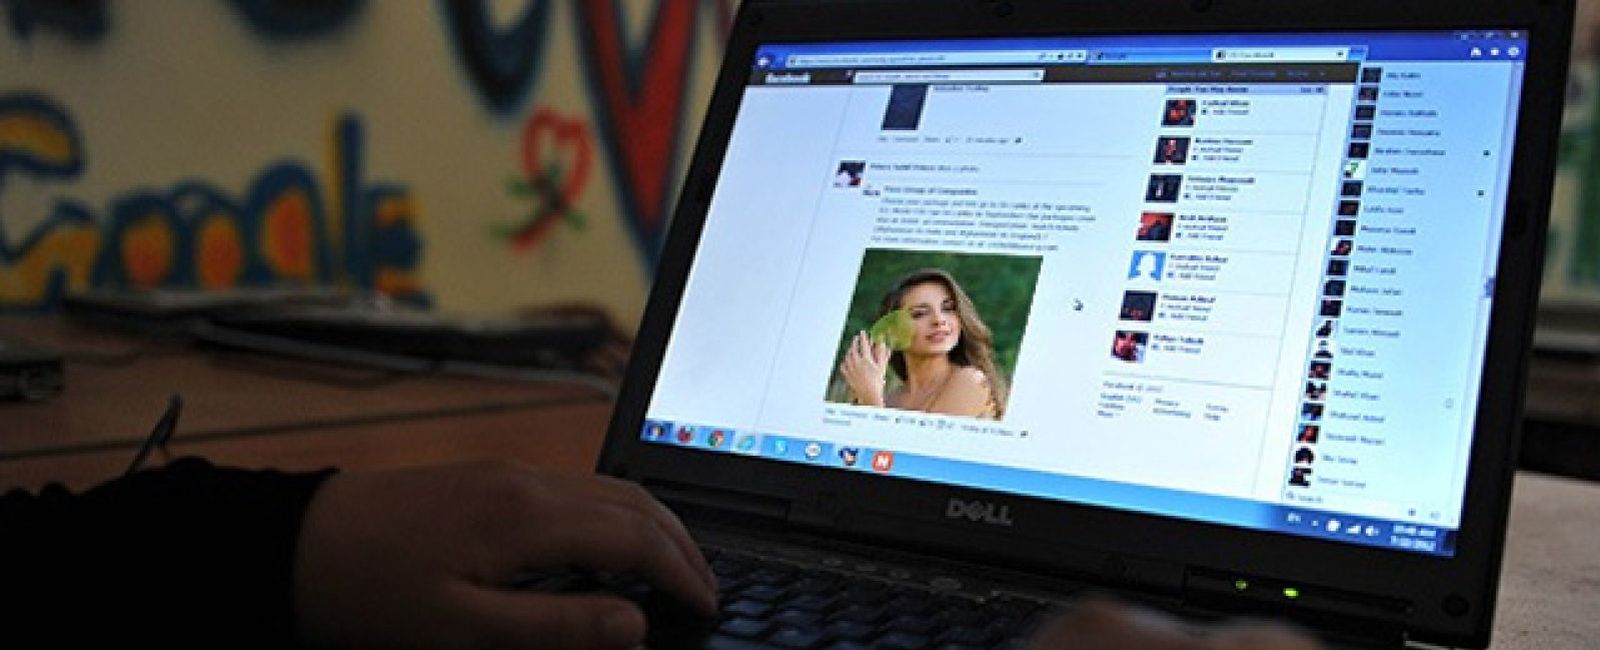 Foto: La última moda social: novias falsas para presumir en Facebook